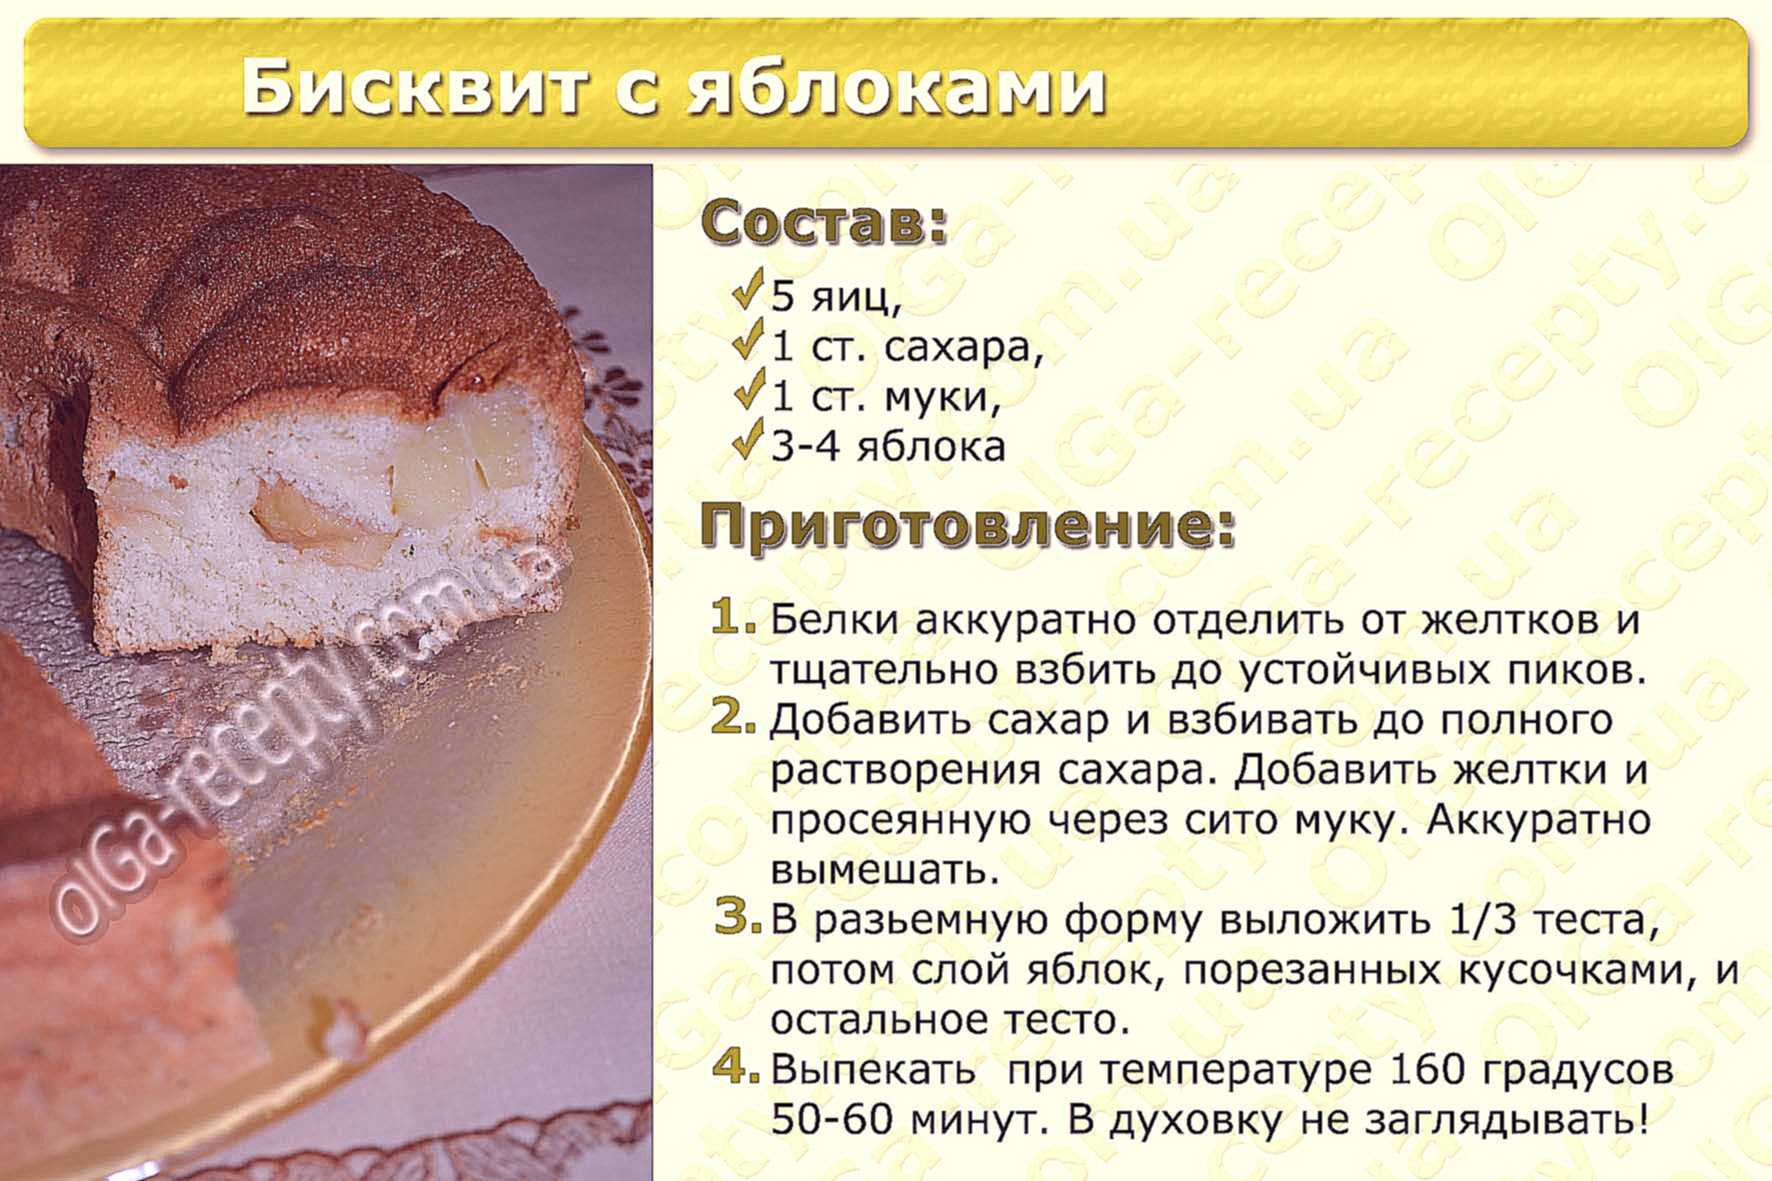 Пирожное буше - рецепты пошагово с фото. как приготовить в домашних условиях пирожное буше по госту